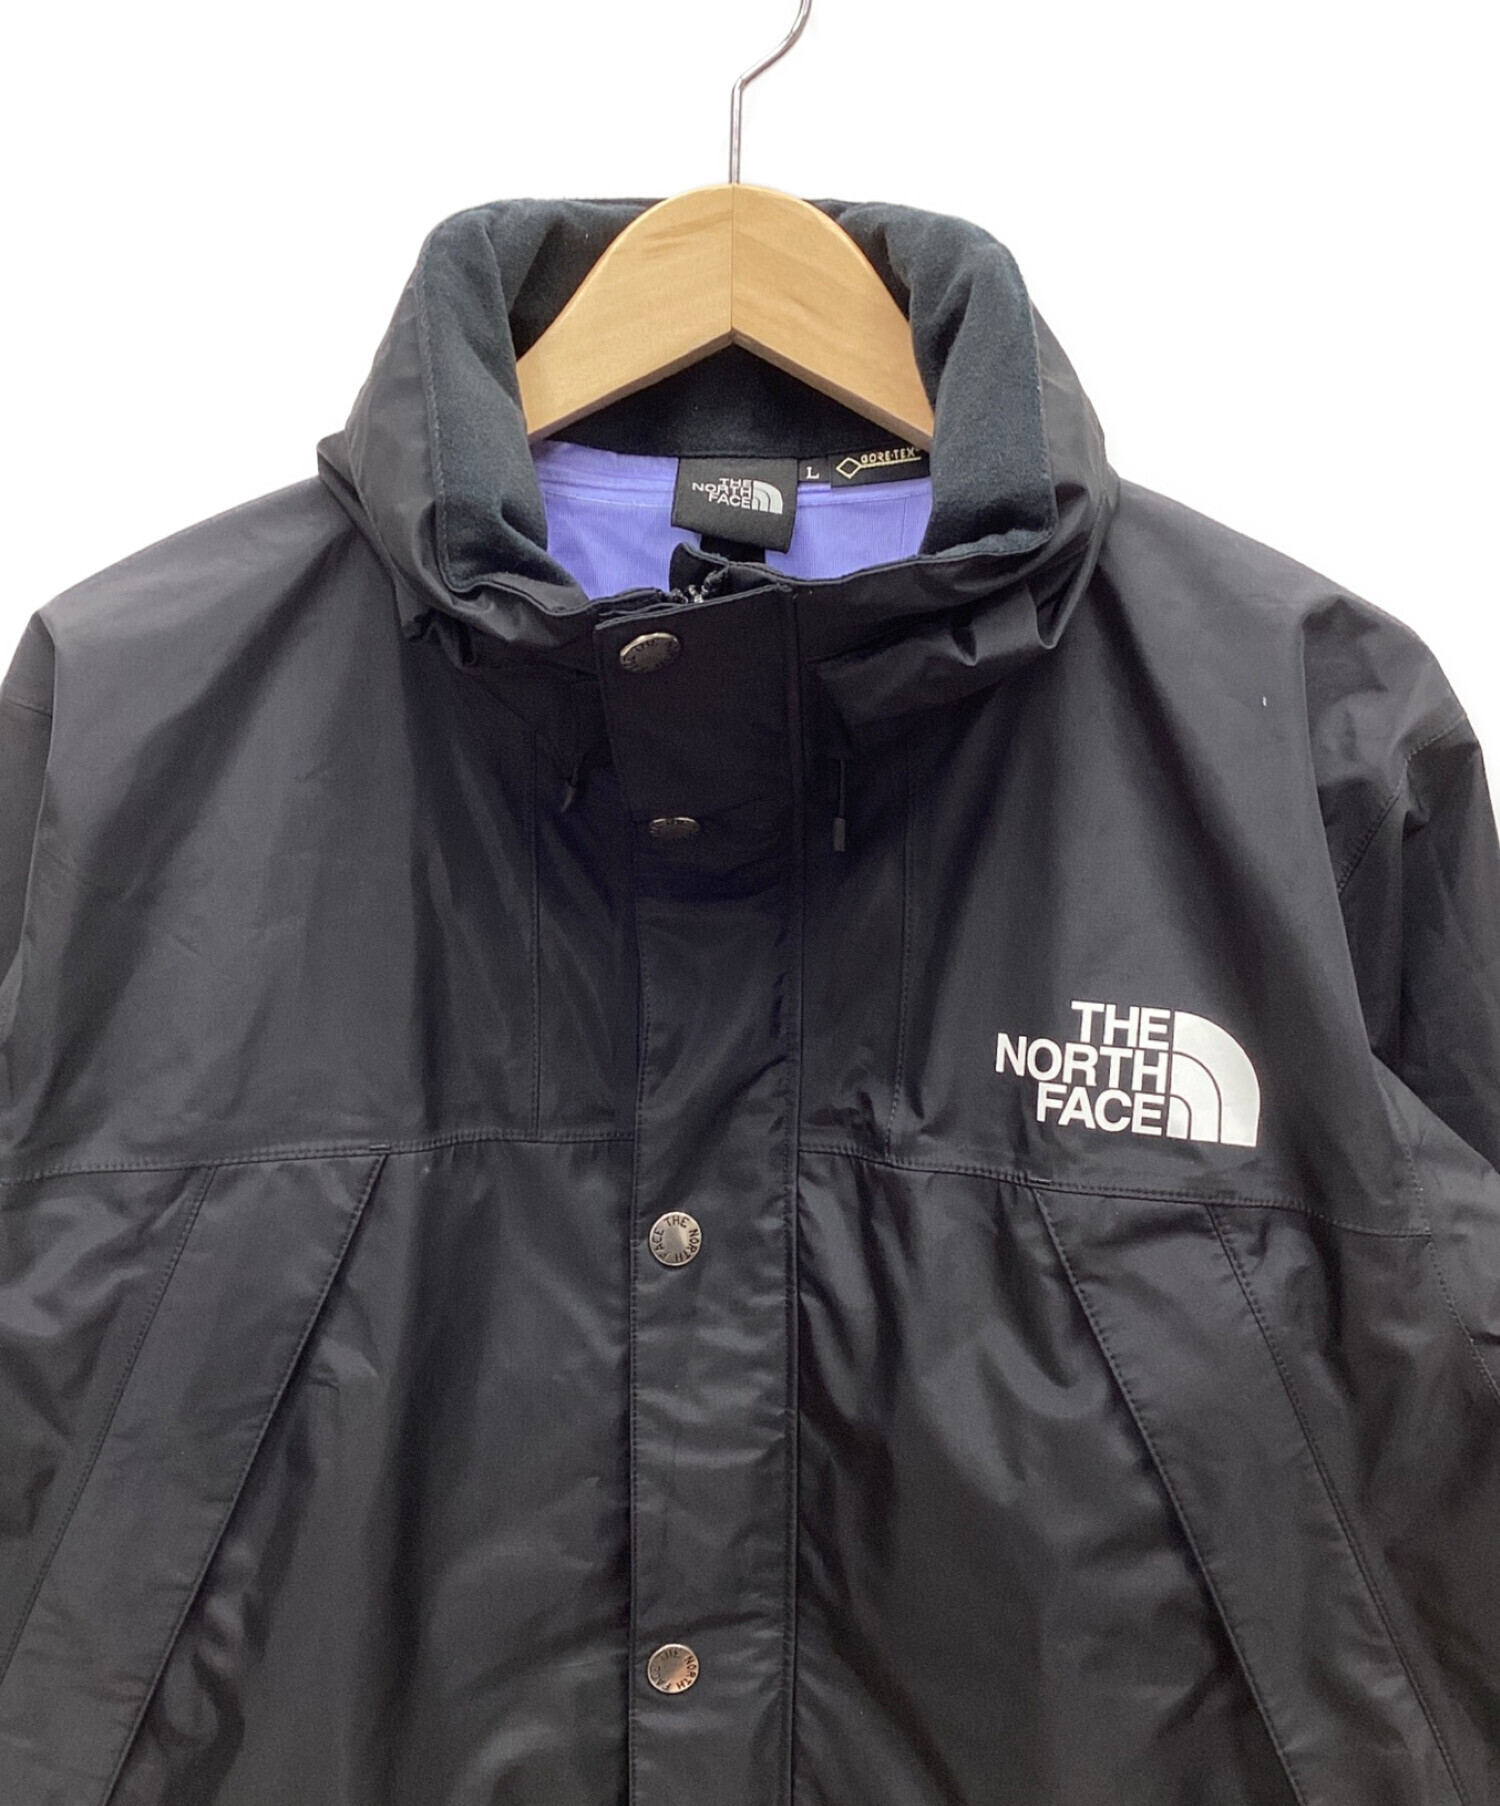 THE NORTH FACE (ザ ノース フェイス) Mountain Raintex Jacket(マウンテンレインテックスジャケット) ブラック  サイズ:L